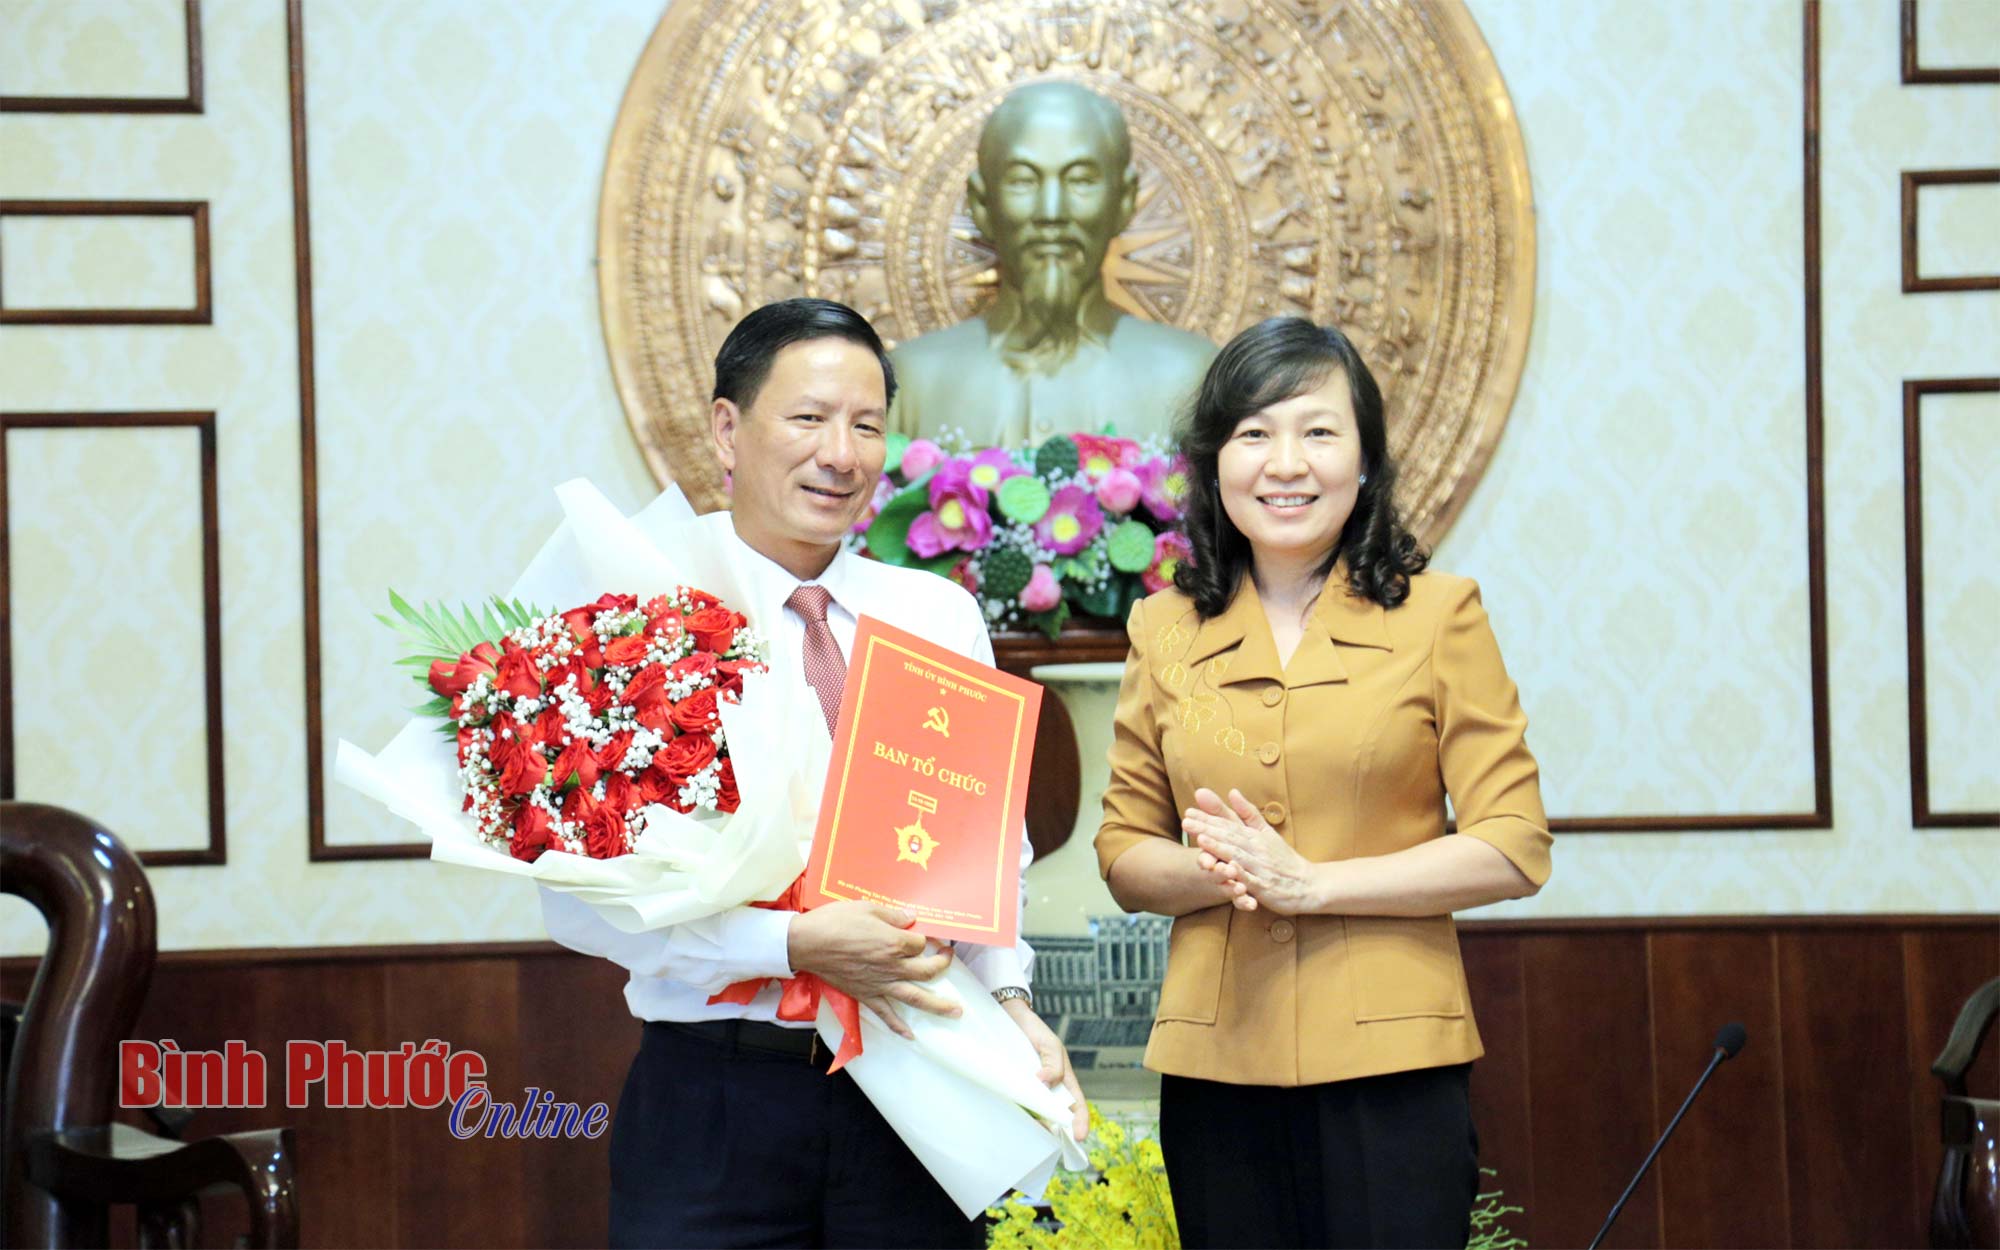 Đồng chí Trần Văn Xuân được bổ nhiệm giữ chức Phó chánh Văn phòng Tỉnh ủy Bình Phước